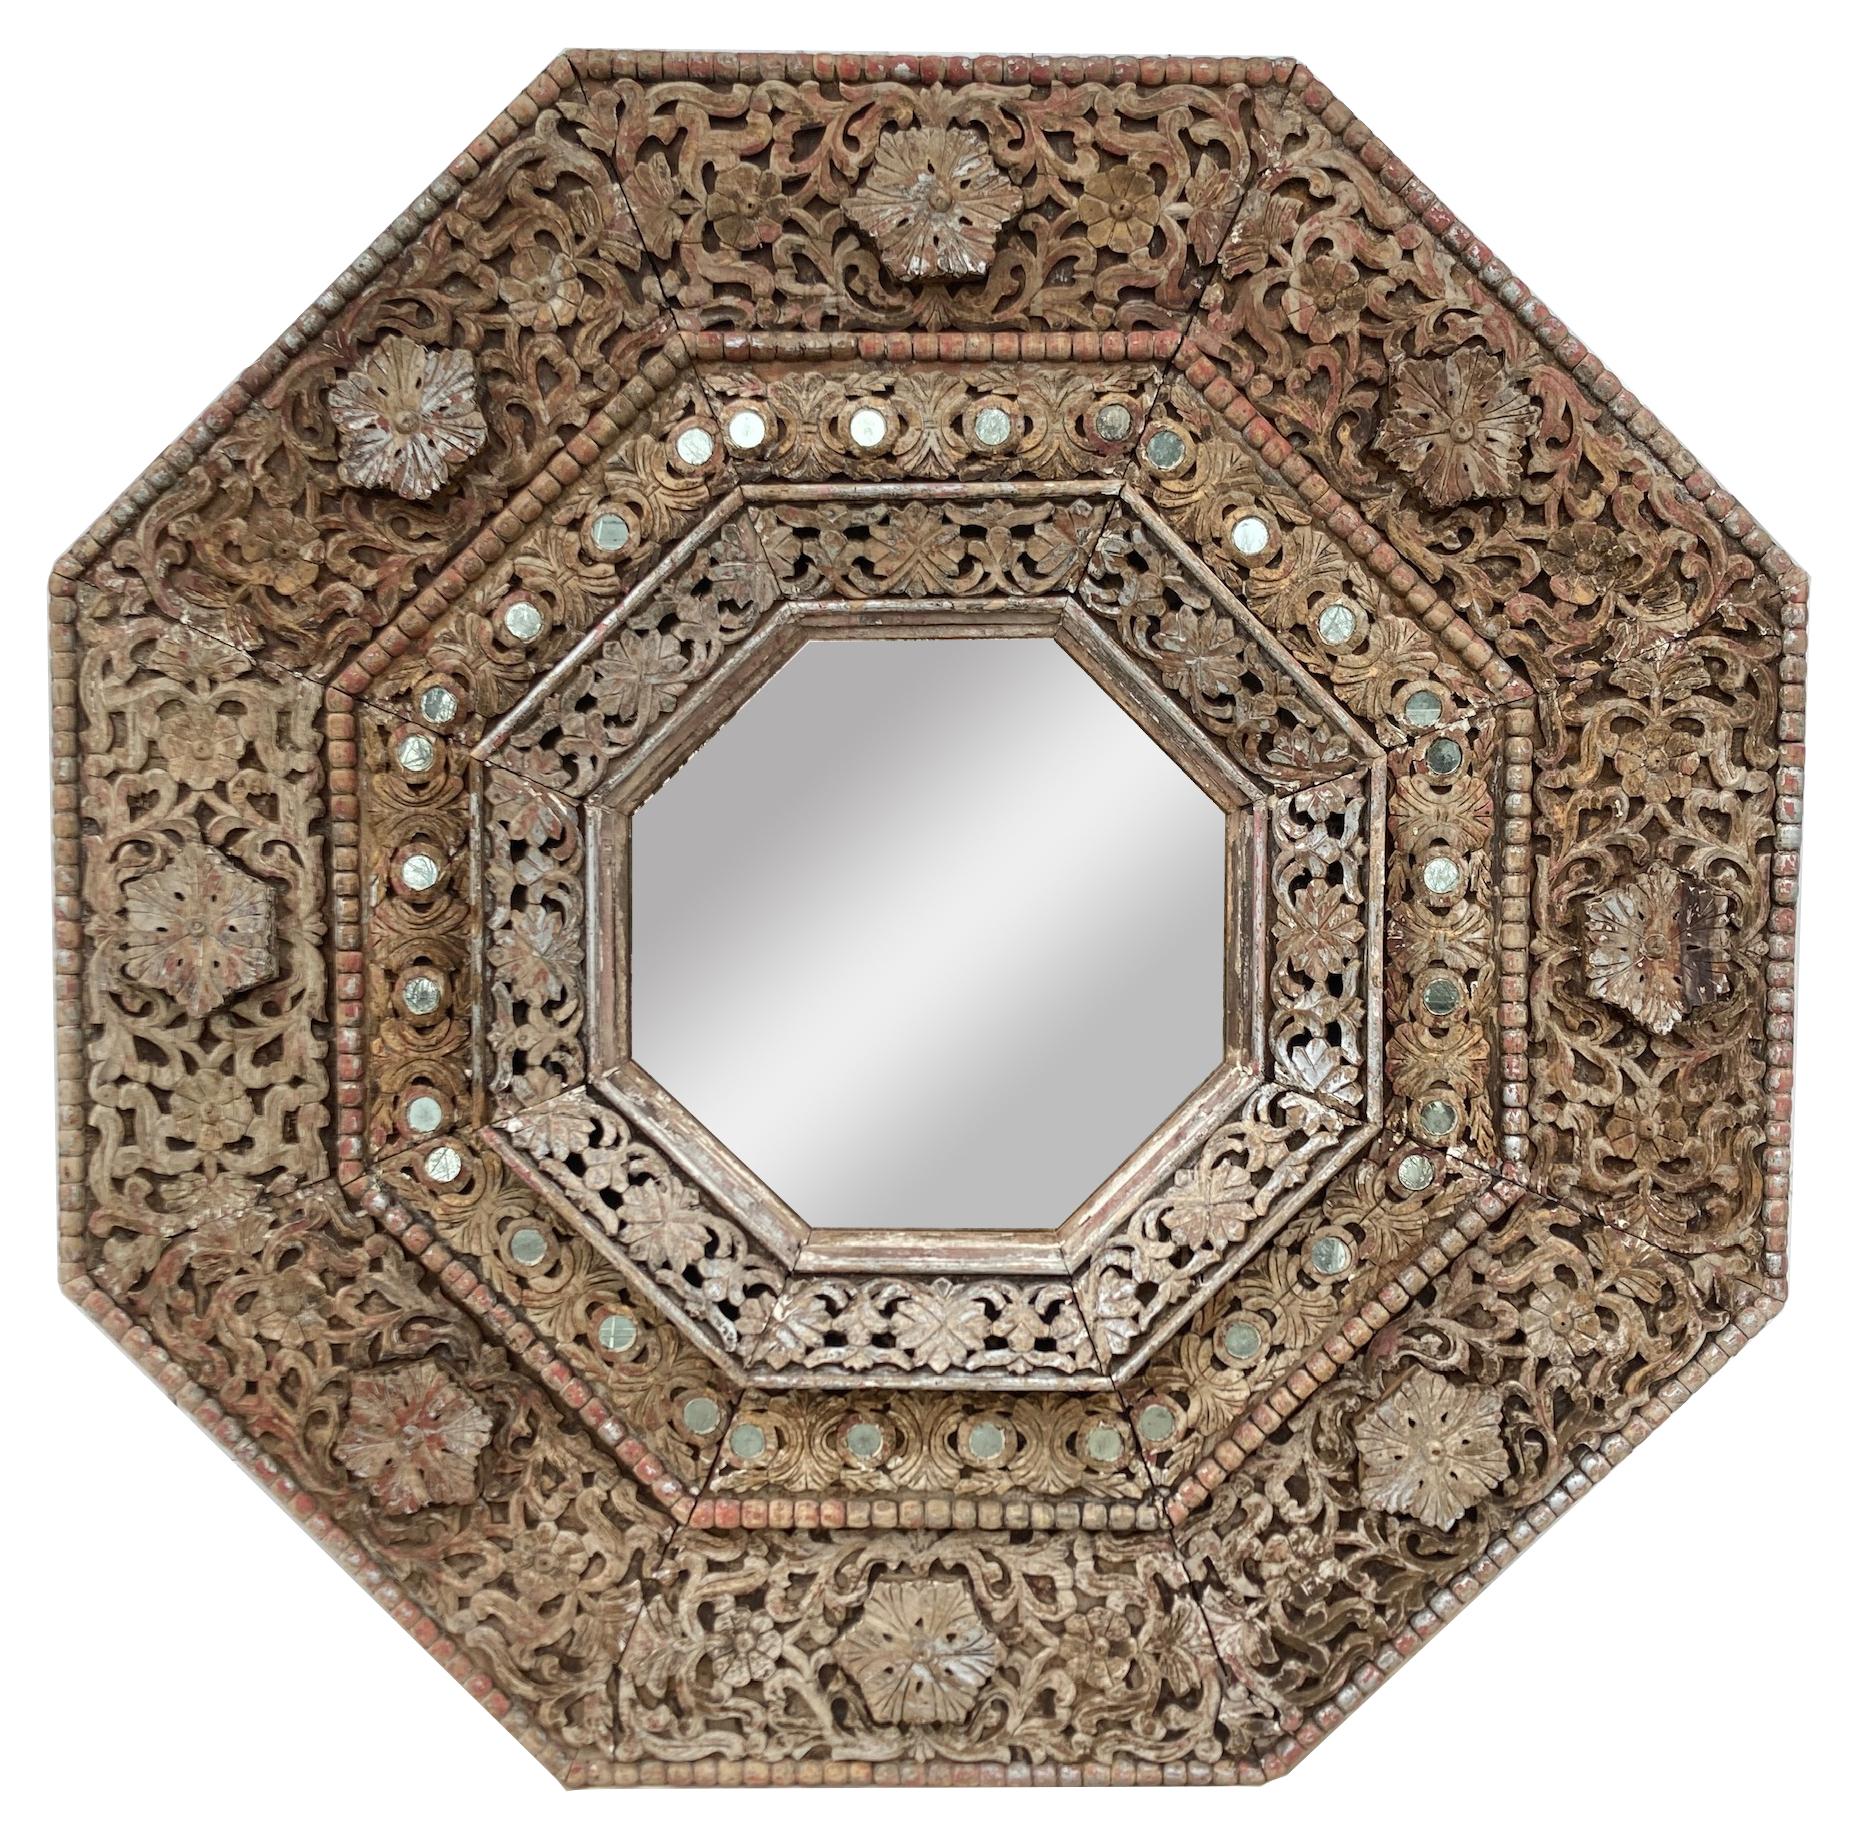 Monumental miroir octogonal indien sculpté des années 1950. D'une dimension de 1,5 m sur 1,5 m, ce miroir est une véritable pièce d'apparat. La sculpture profonde lui confère une
L'aspect de l'art populaire, tandis que la surface usée par les